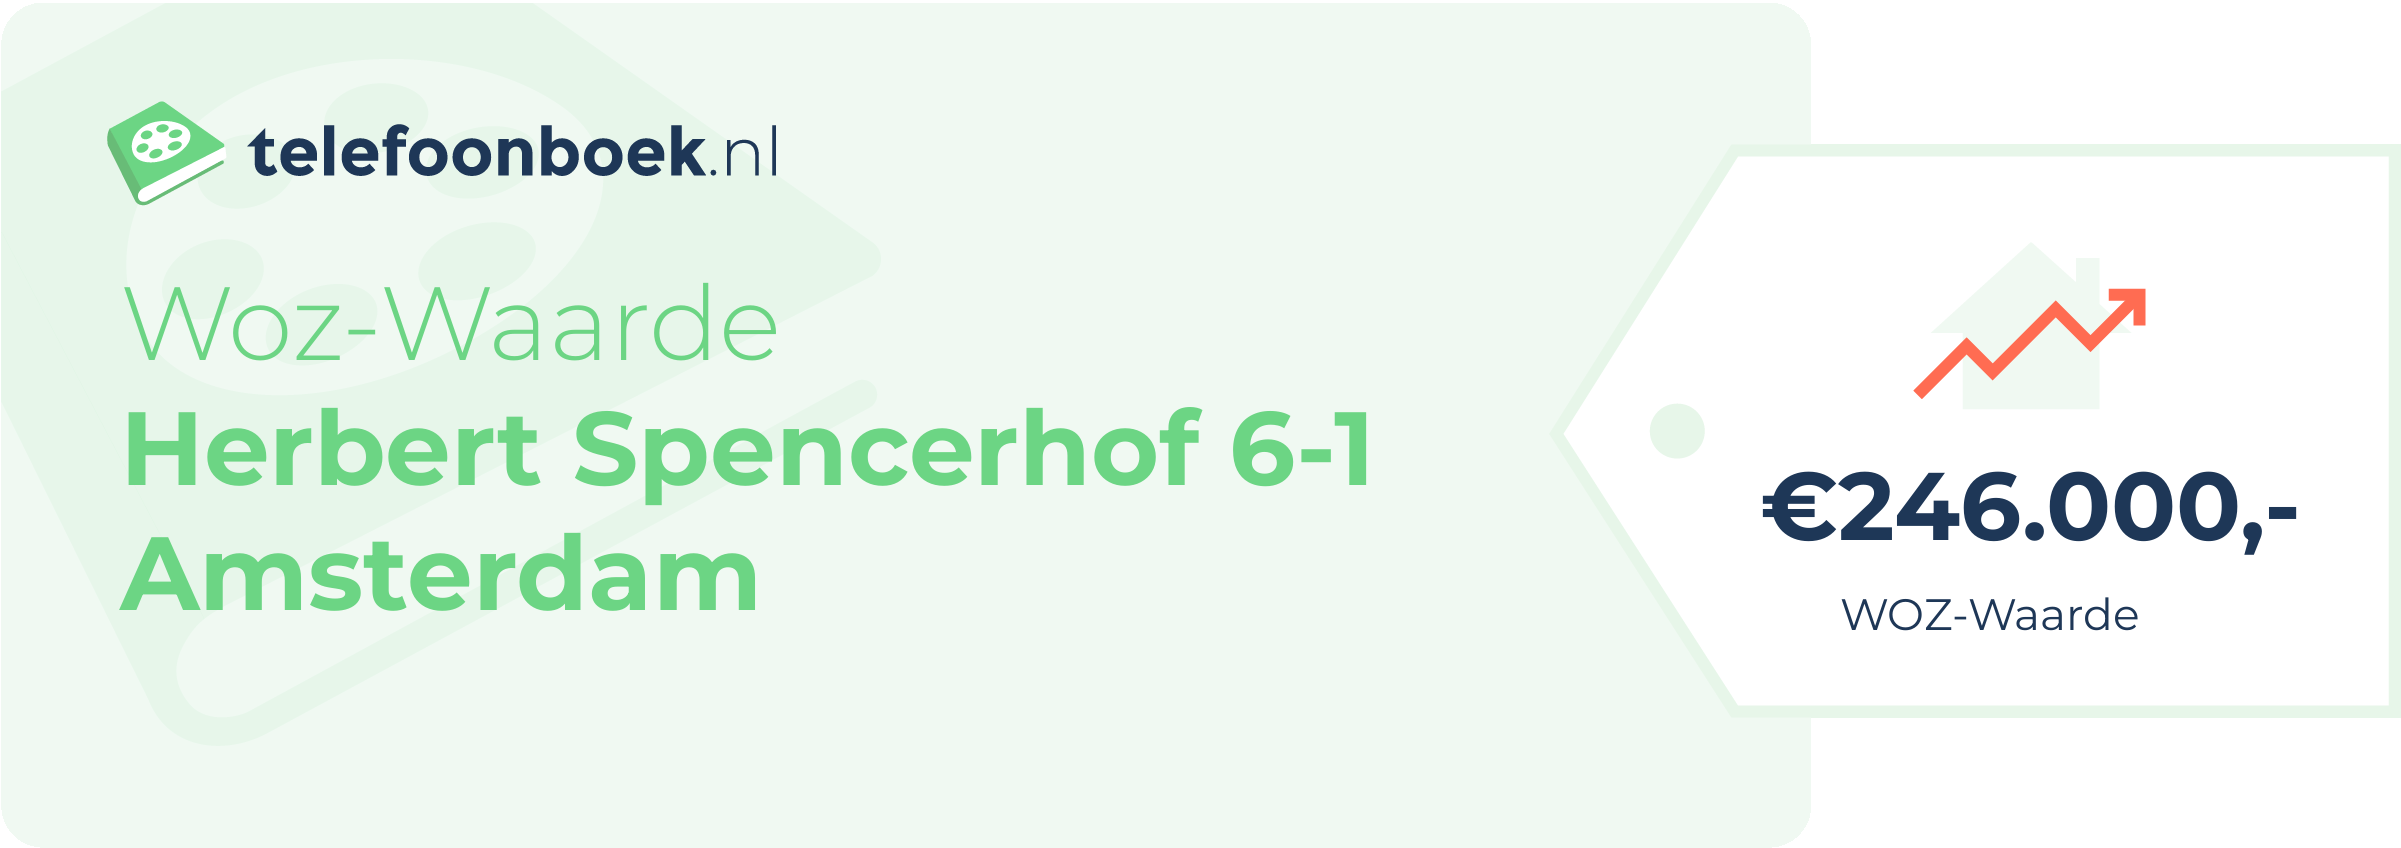 WOZ-waarde Herbert Spencerhof 6-1 Amsterdam